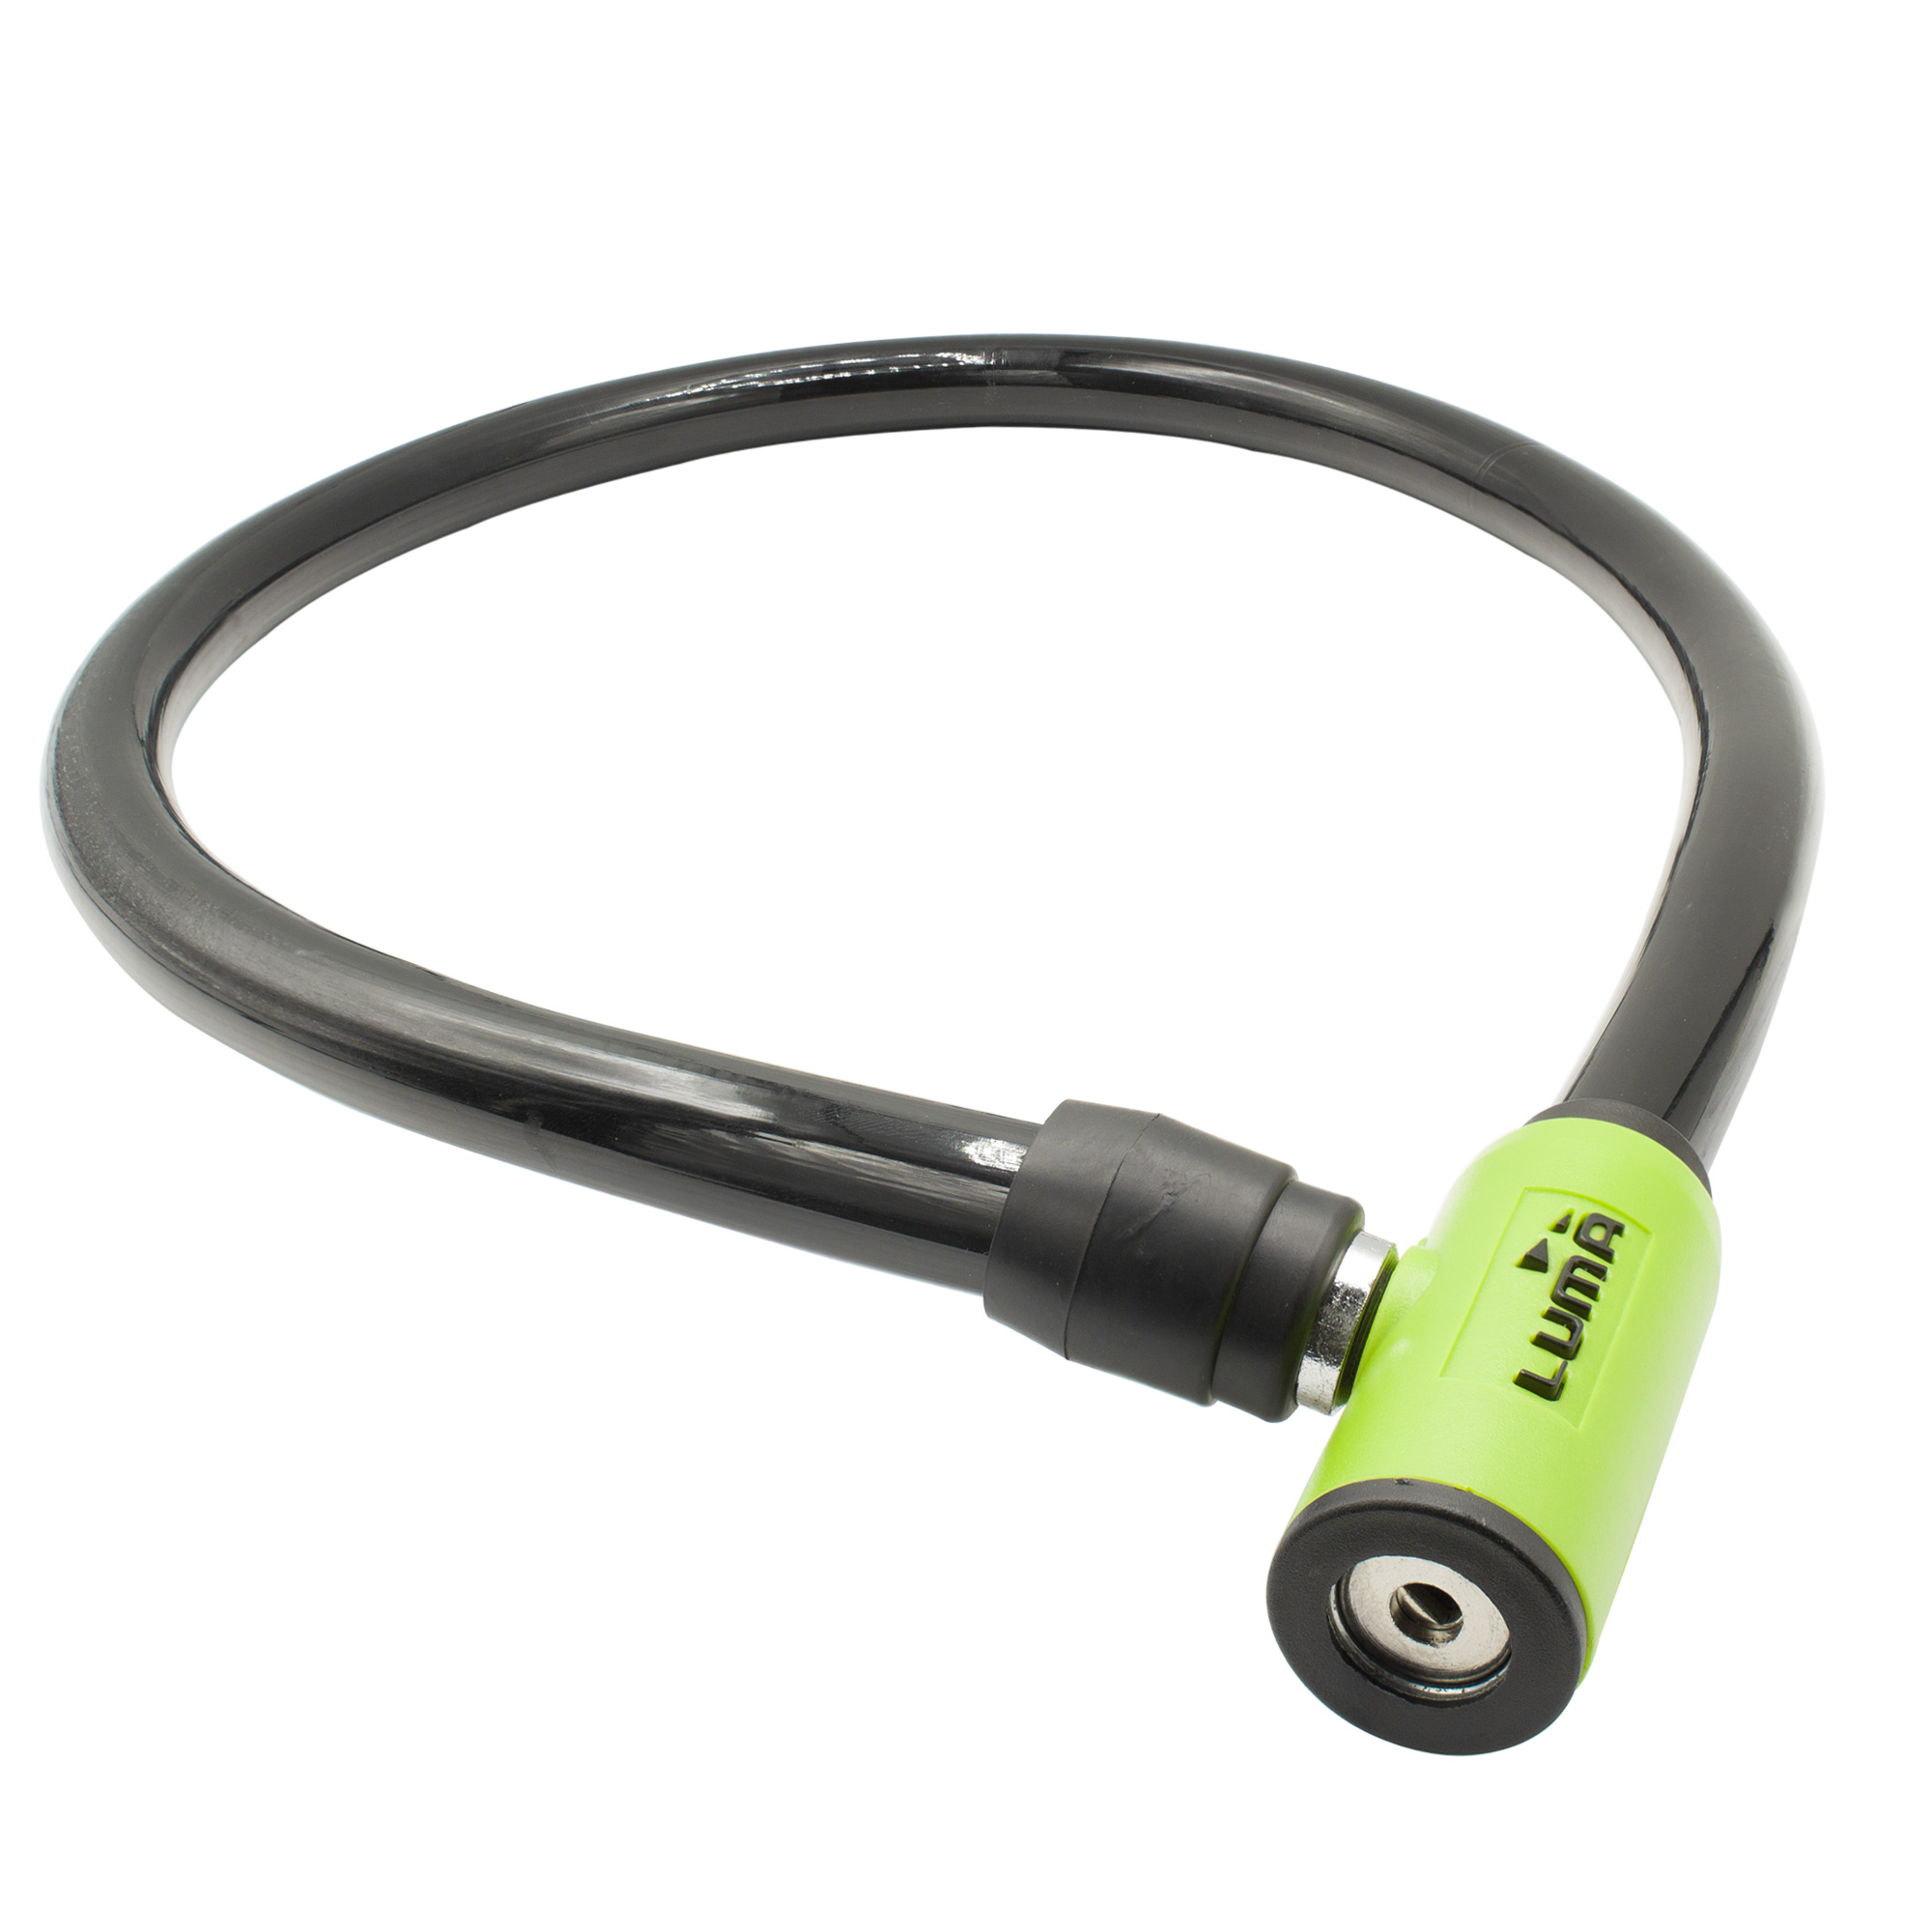 Ciclometa Detalles Candado de cable para bicicleta L:100cm G:20mm S:4/10  No. 7337 cable verde Luma